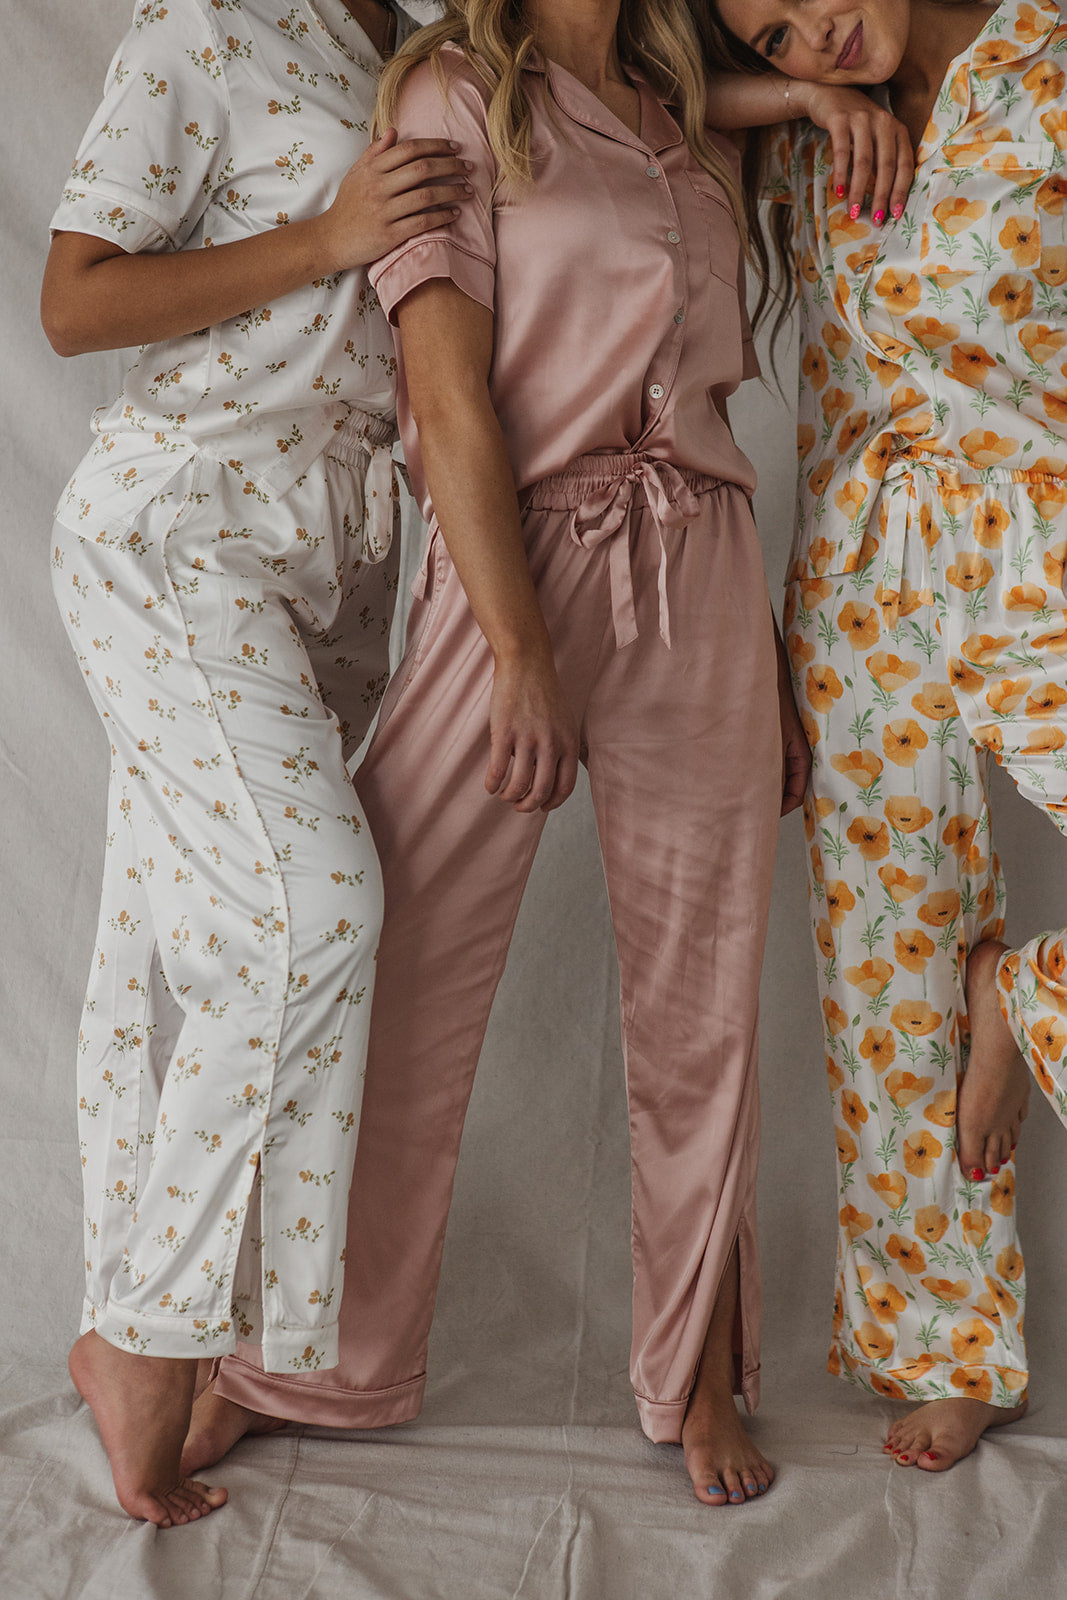 Satin Pajama Set | Misty Rose Short Sleeve